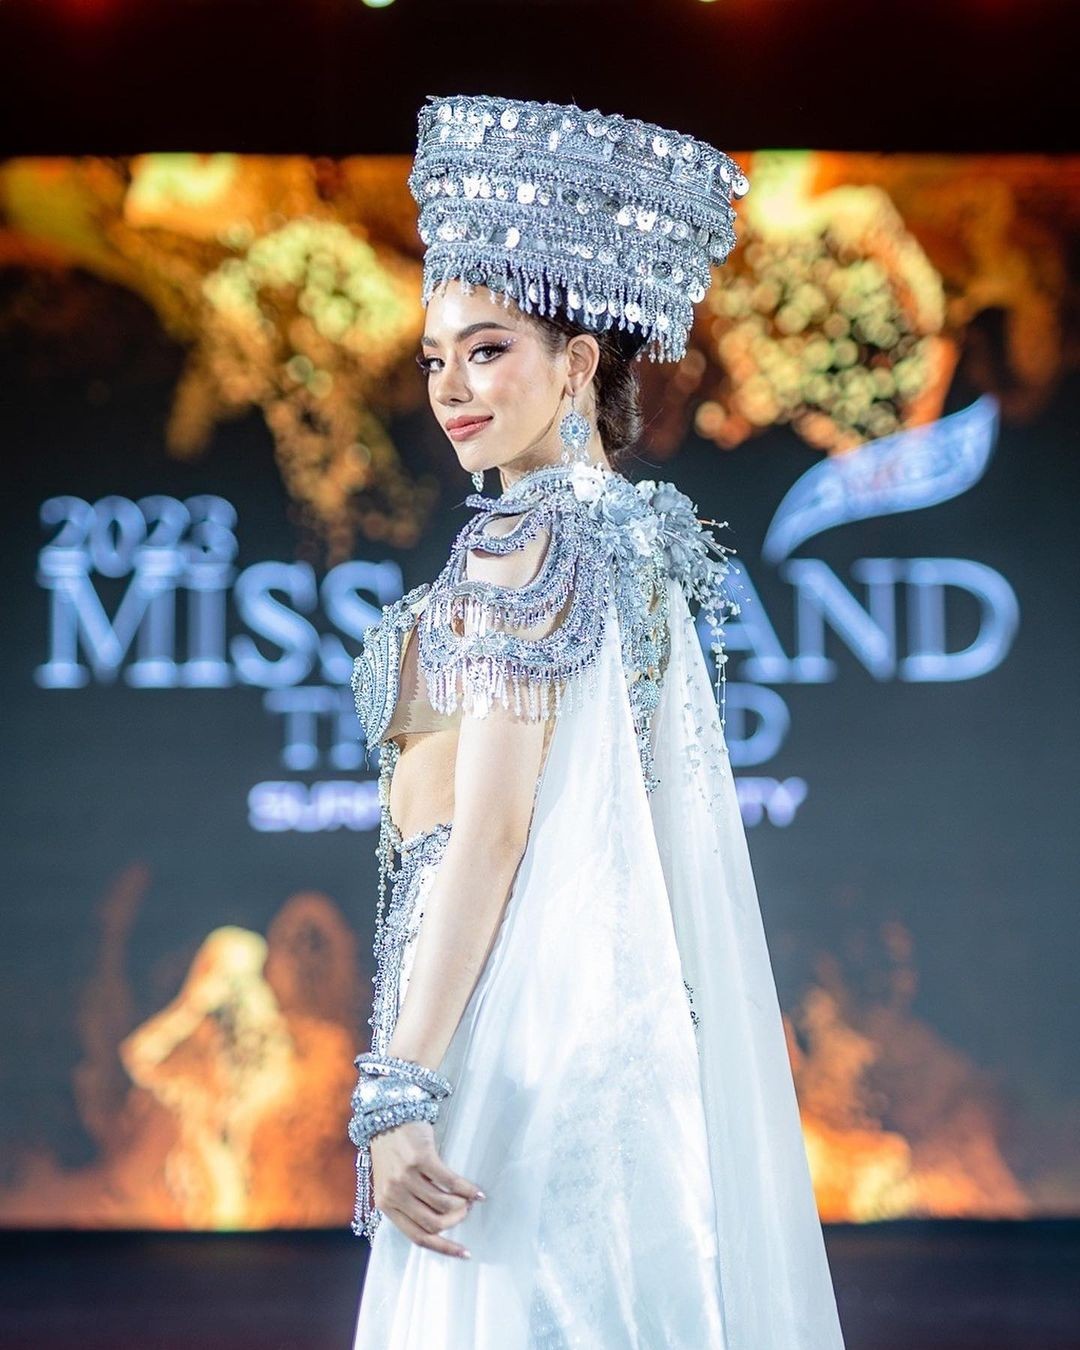 Màn trình diễn của người đẹp gốc Việt ở Hoa hậu Hòa bình Thái Lan - Ảnh 16.